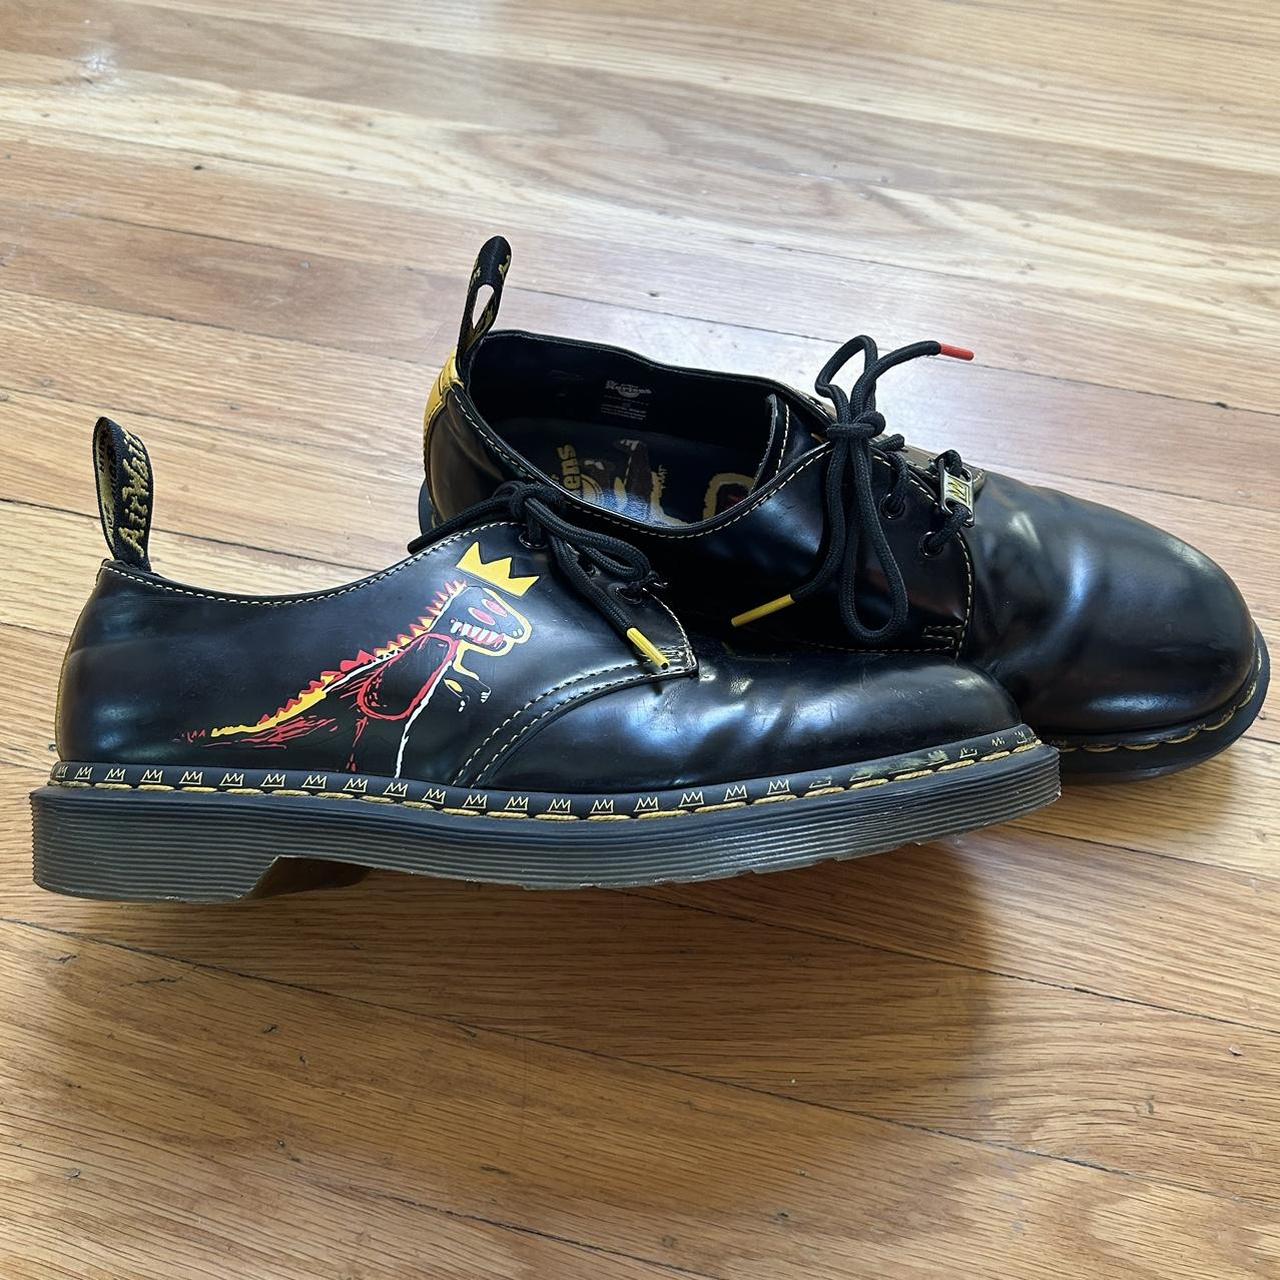 BAIT Footwear Romona in Black Size US 10 * Wear - Depop